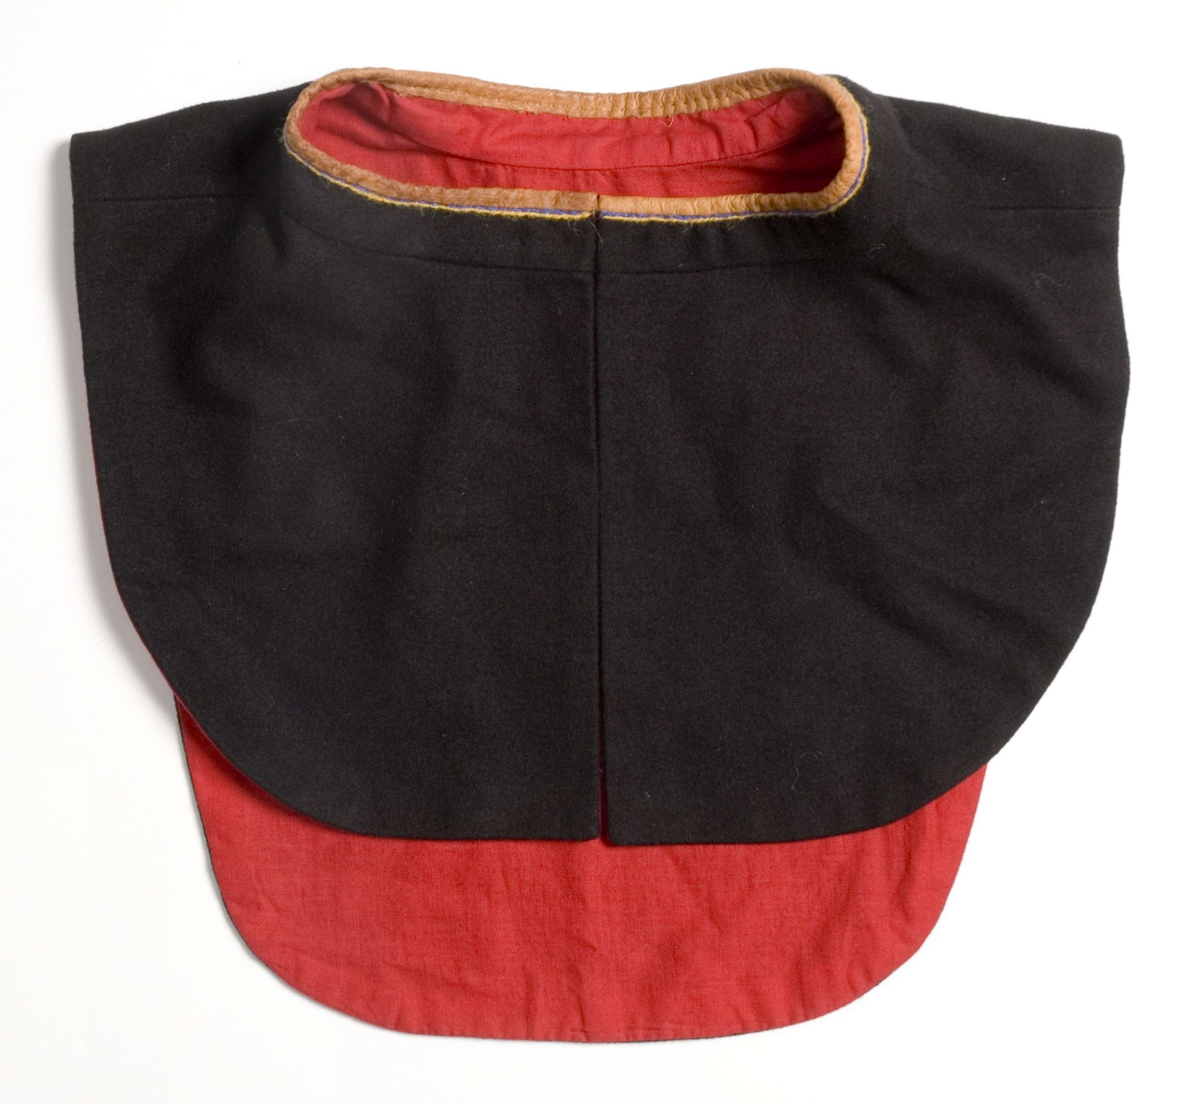 Brystklede til samisk mannskofte NFSA.4458A, av svart klede kantet med brunt skinn og brodert med rødt, gult og blått med innlagte stykker av kråkesølv. Foret med rødt tynt stoff. Festes med sikkerhetsnål.